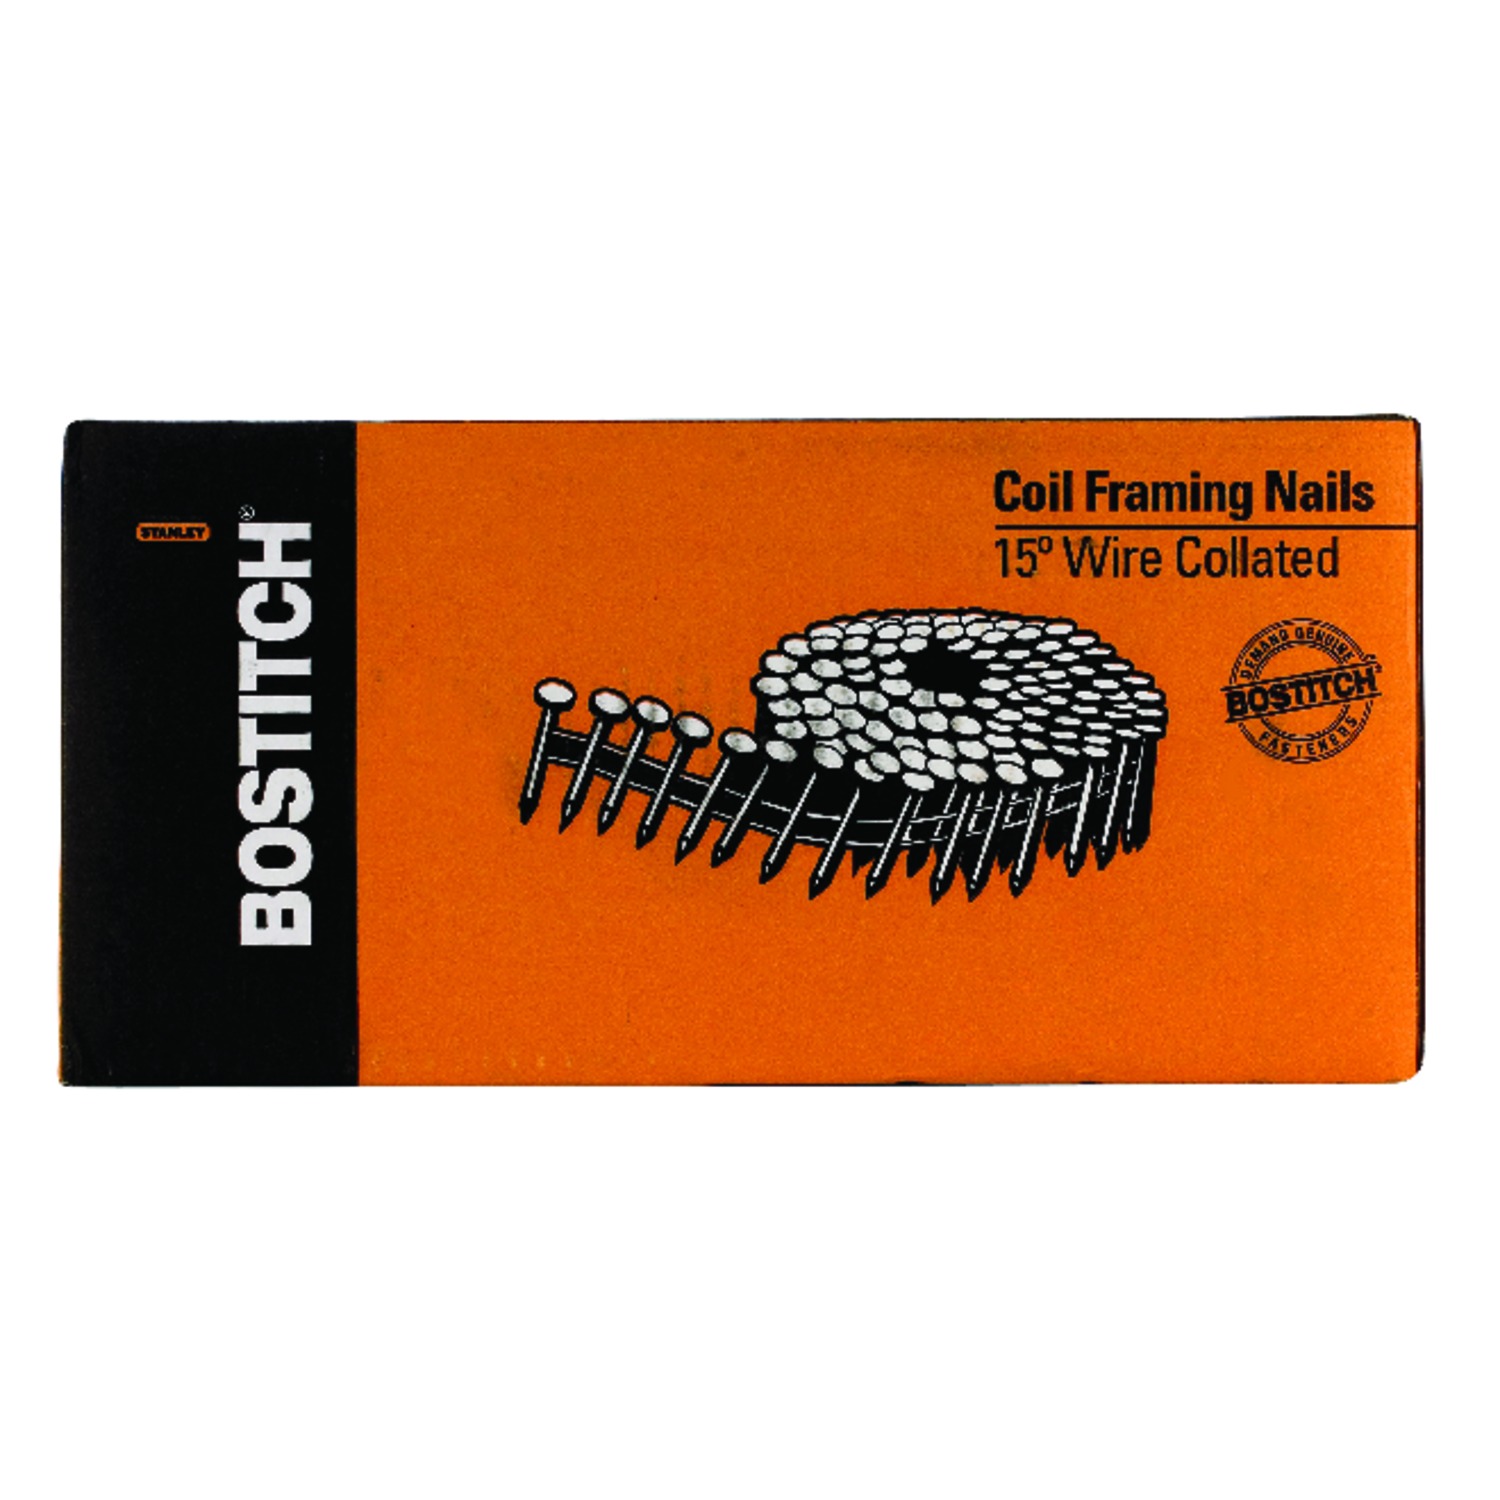 Bostitch 3 in. 11 Ga. Angled Coil Coated Framing Nails 15 deg 2700 pk